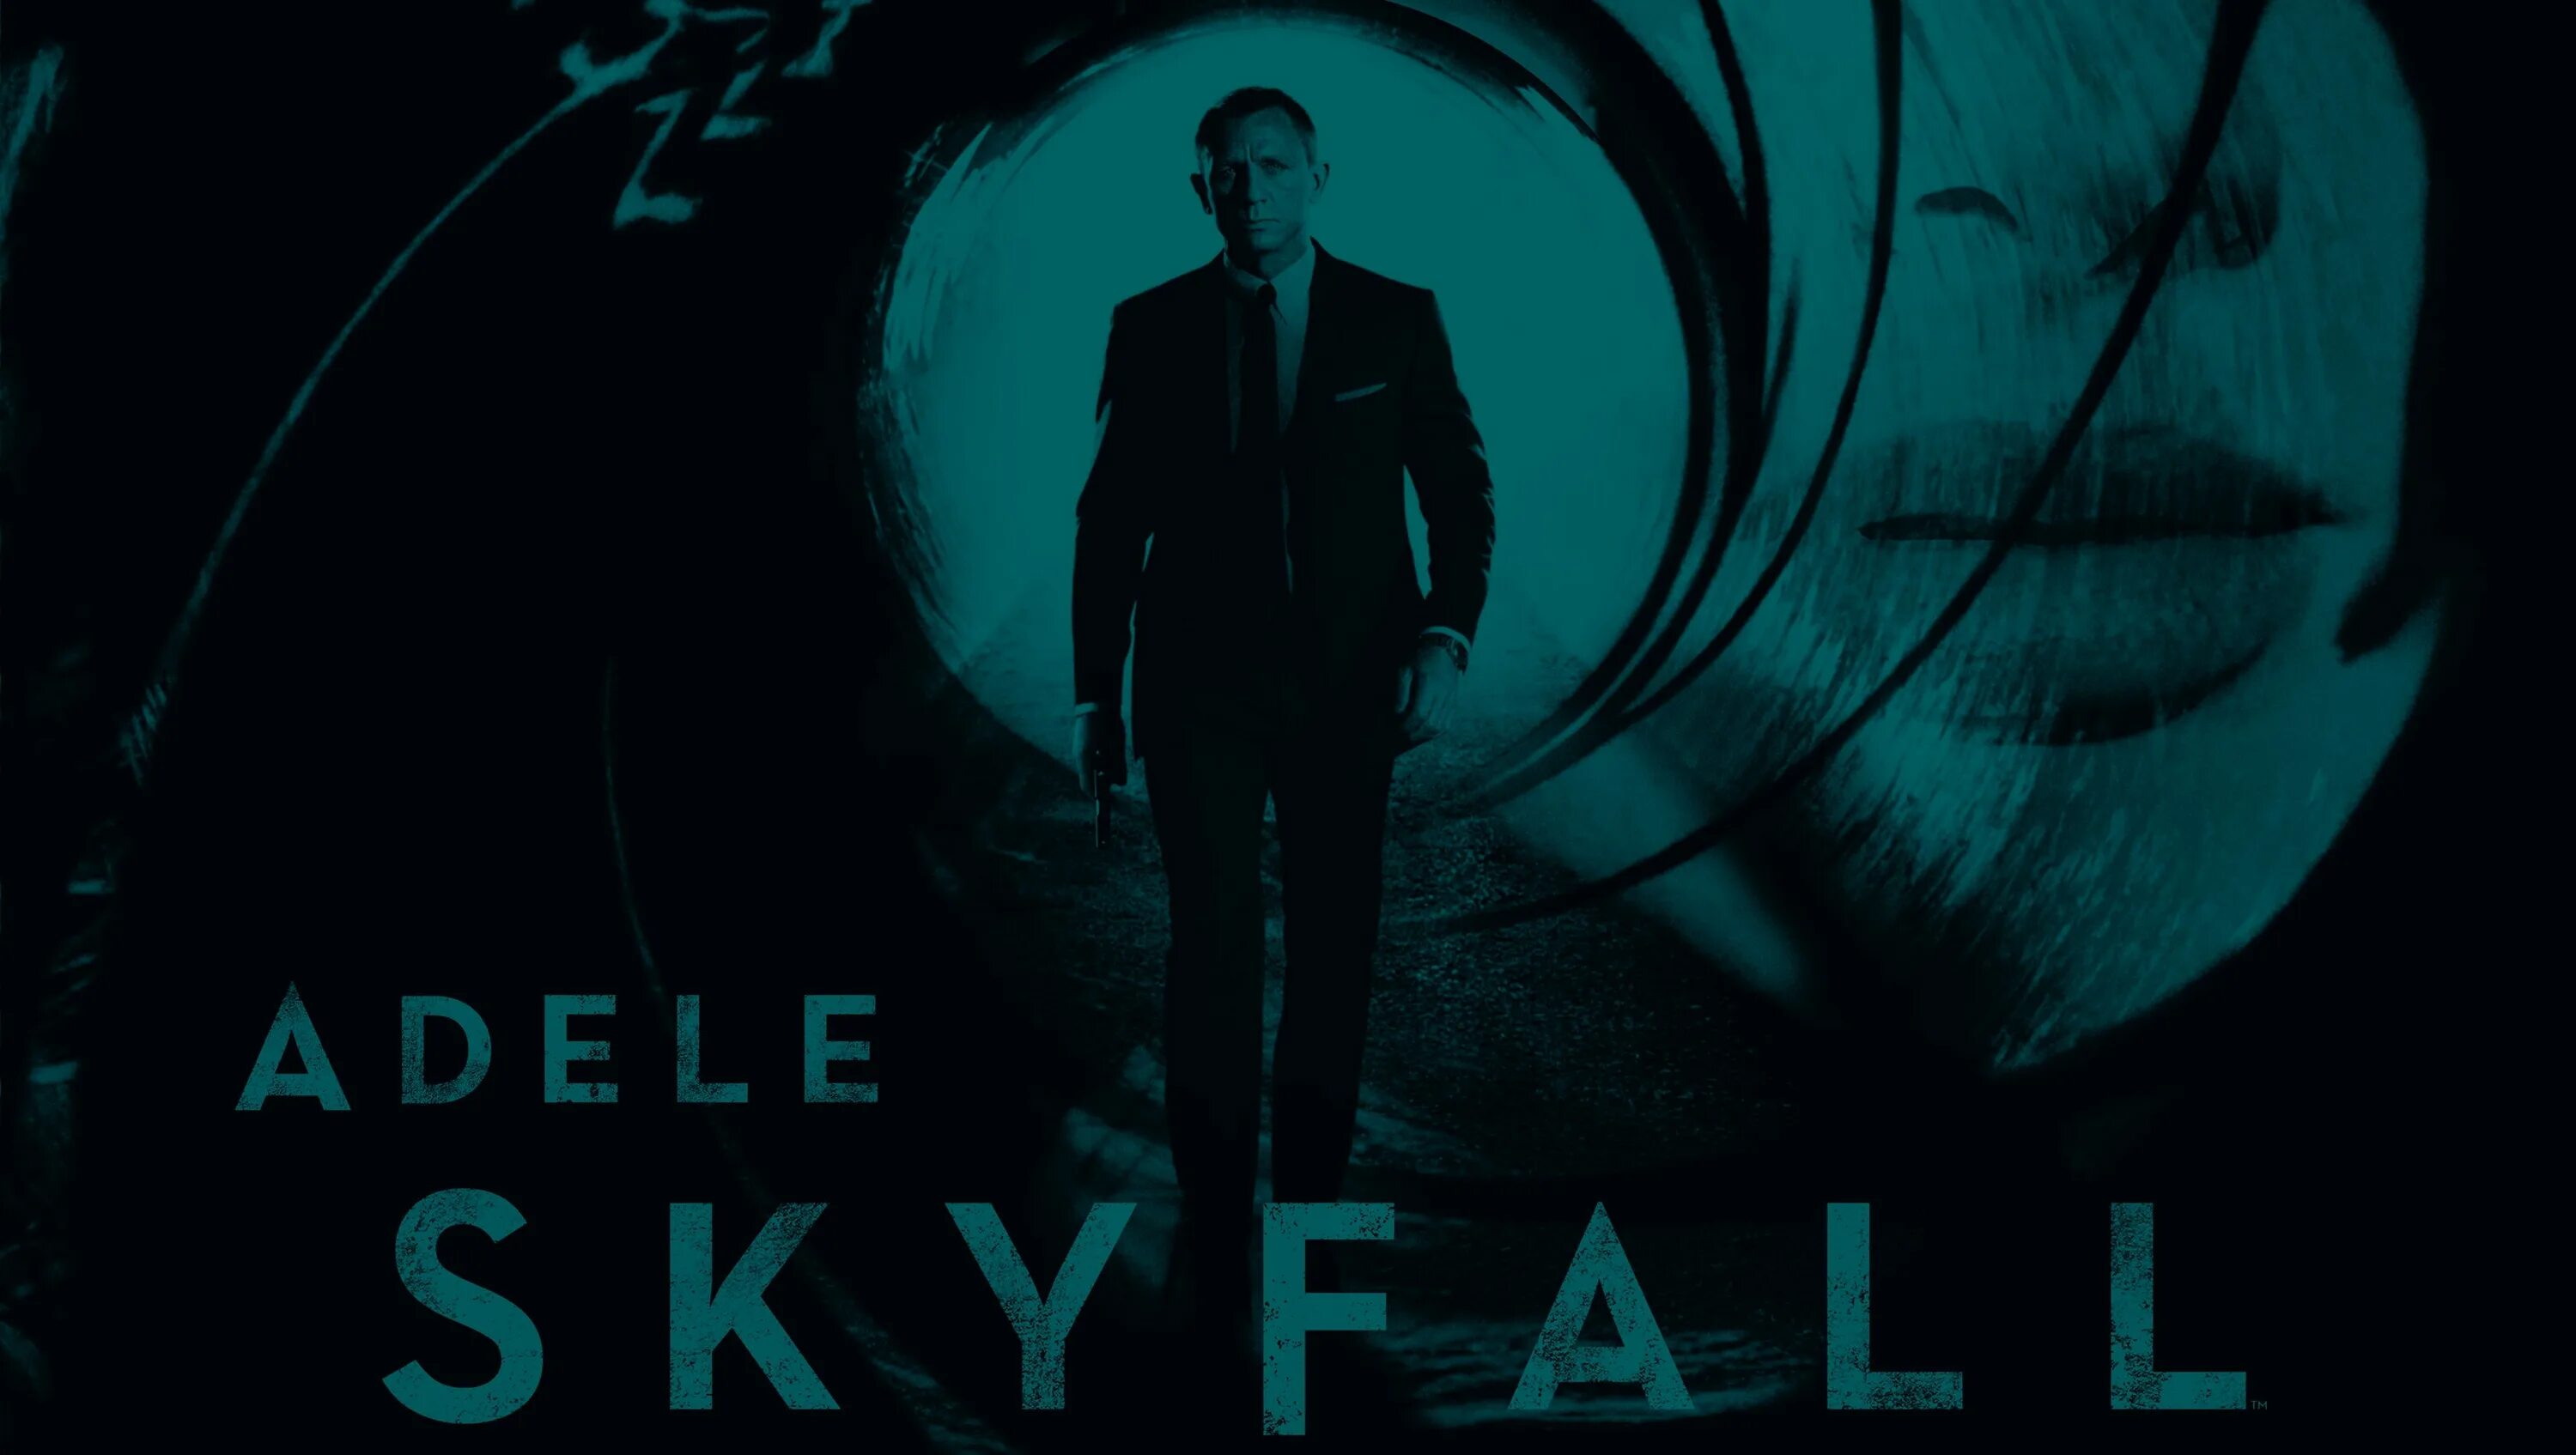 007: Координаты Скайфолл. 007 Skyfall обложка. Vibe skyfall